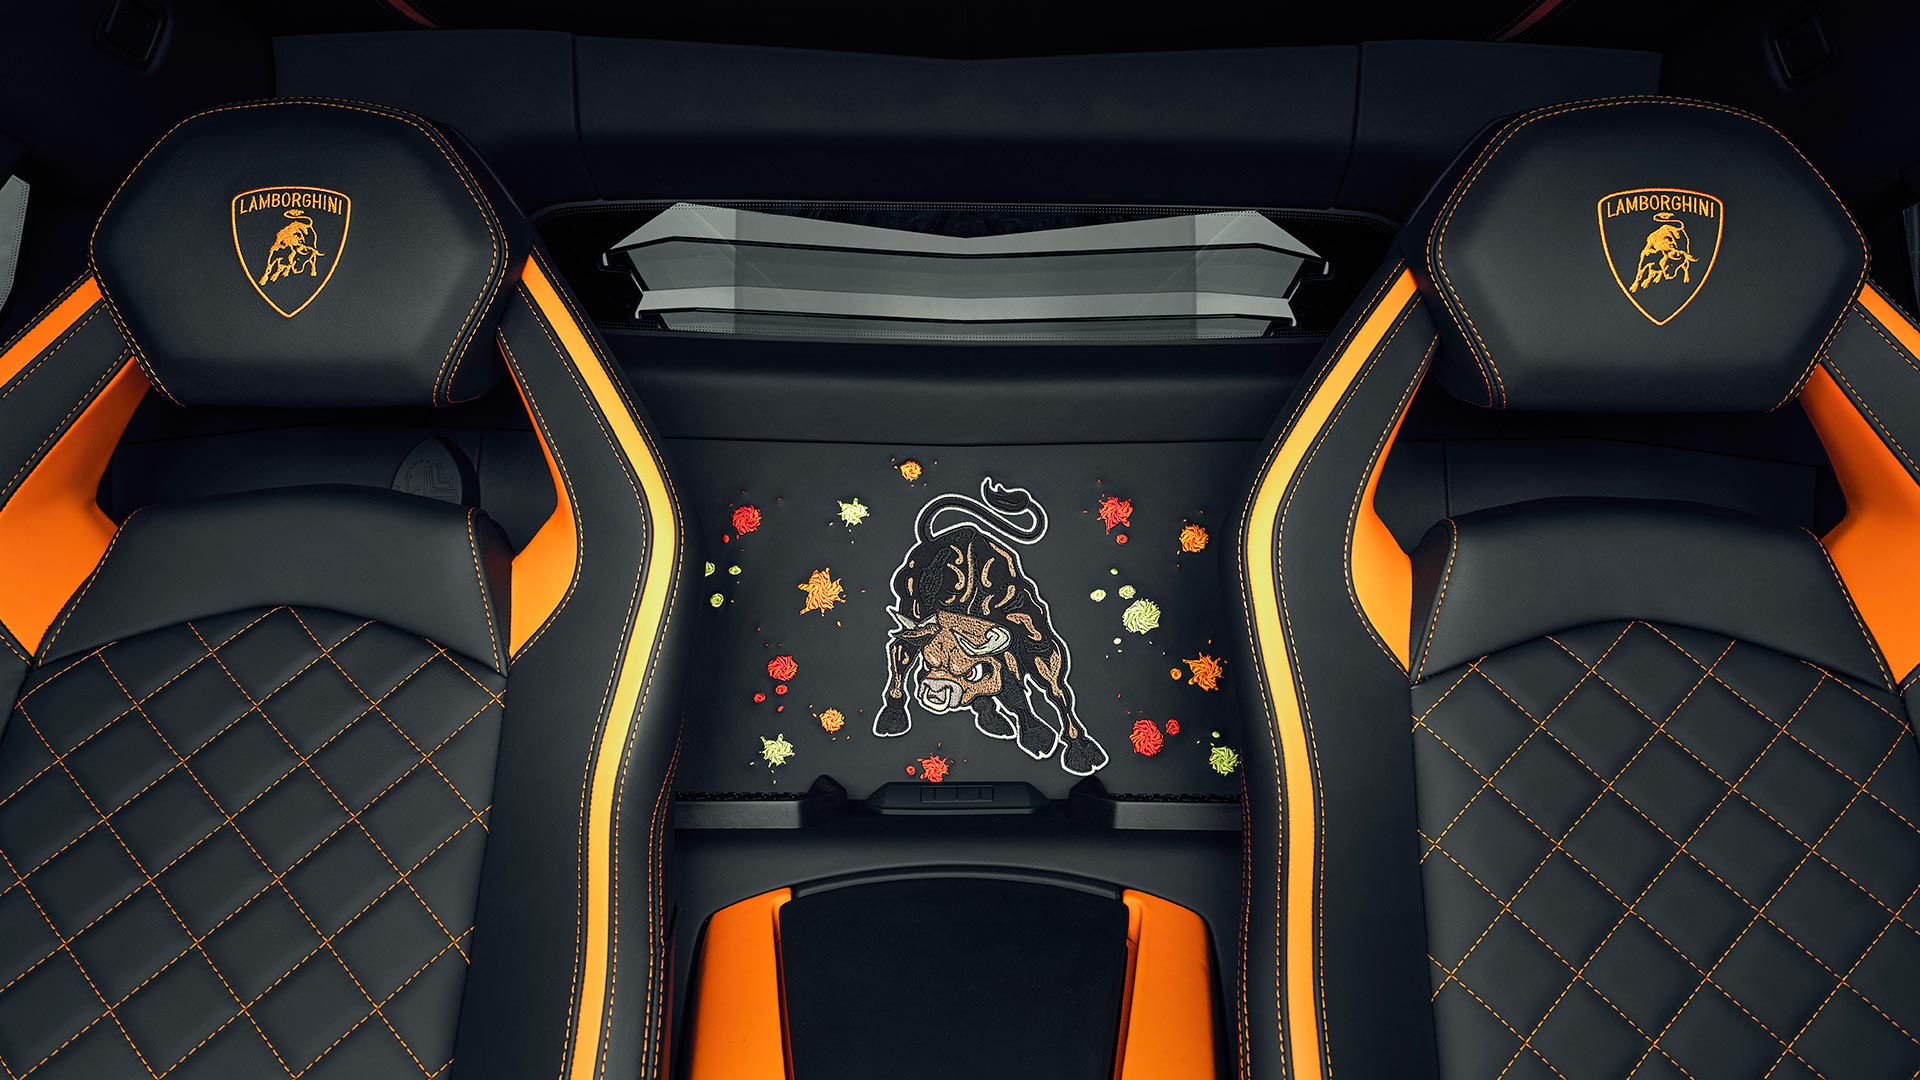 Lamborghini Aventador S 2019 Art Car